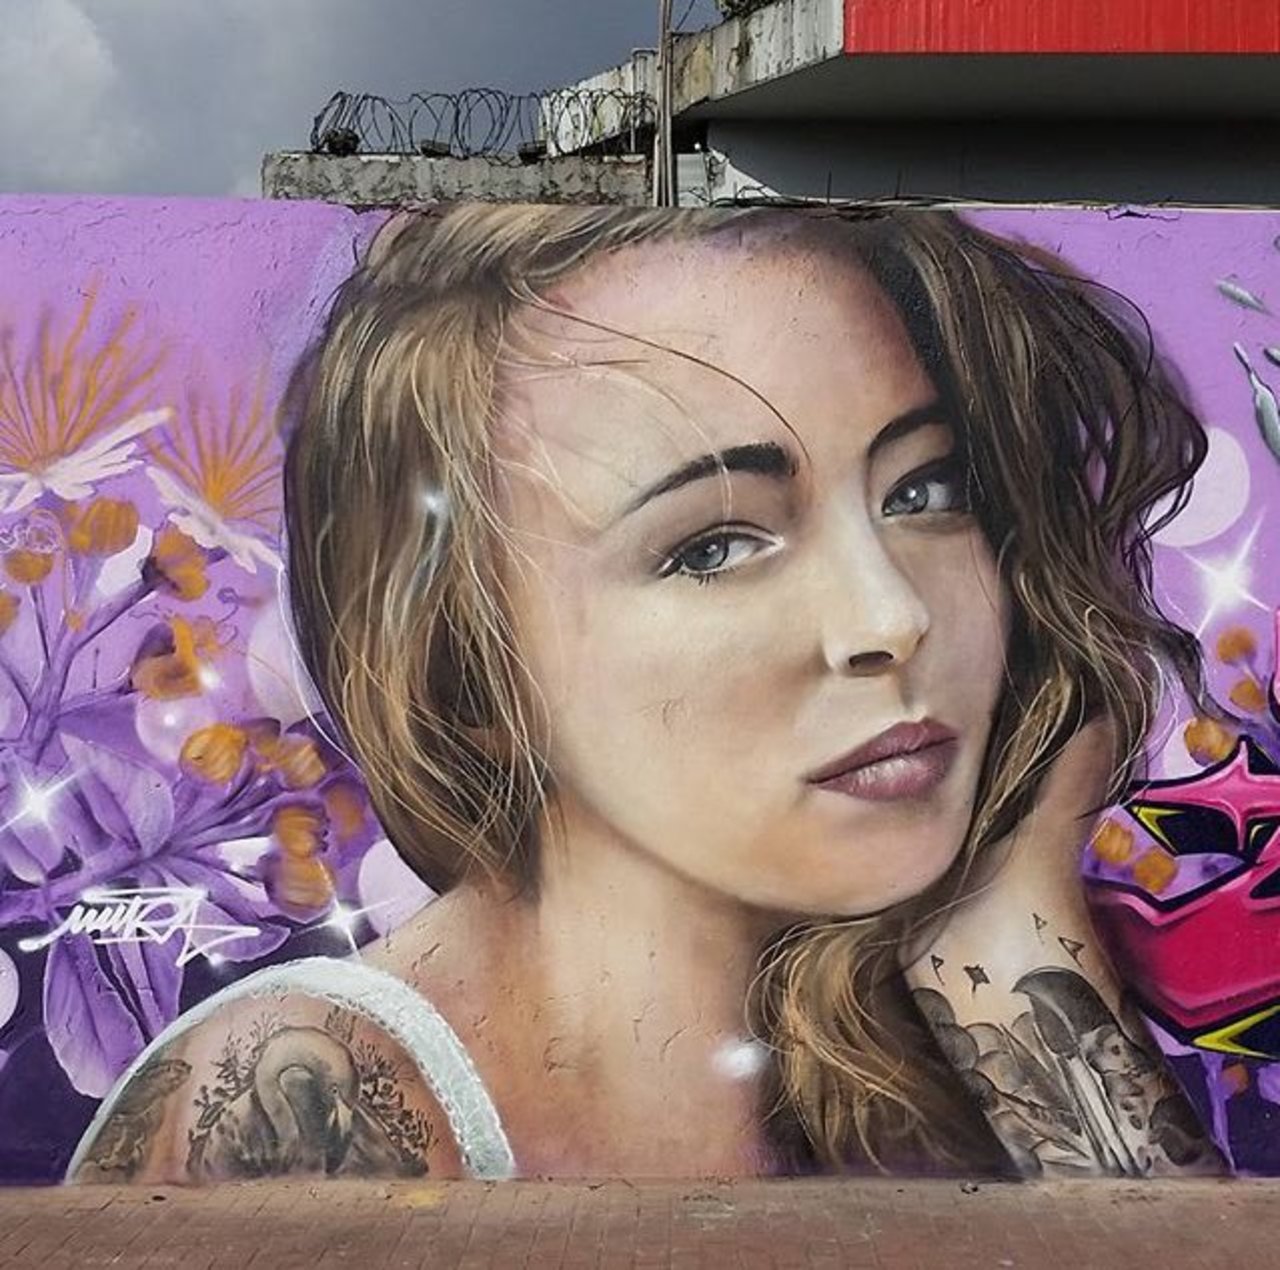 New Street Art by Mantarea 

#art #graffiti #mural #streetart https://t.co/4GQbivLXEt